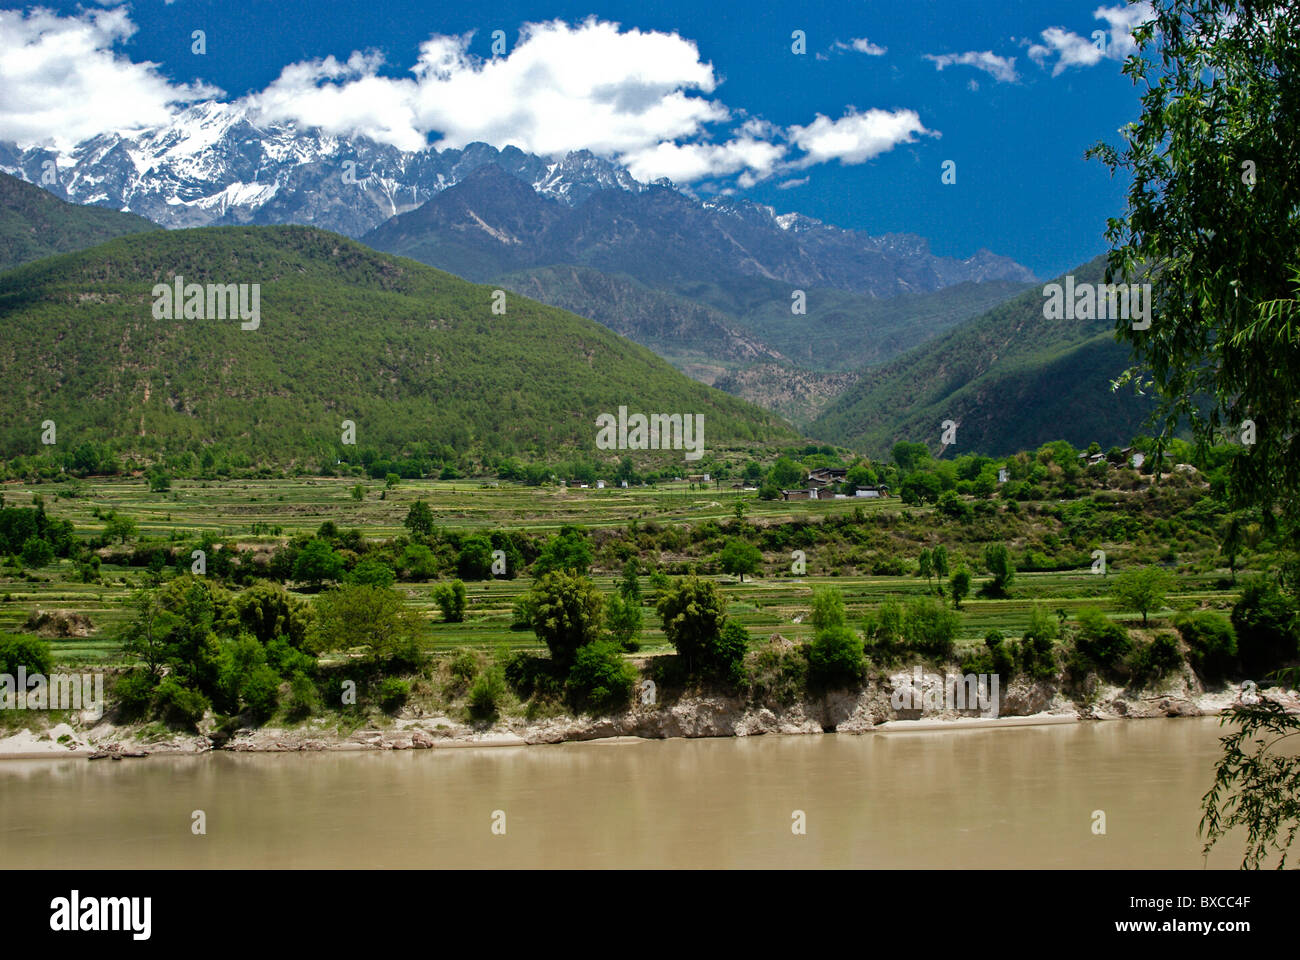 Himalayas and Yangtze River near Shigu, Yunnan, China Stock Photo